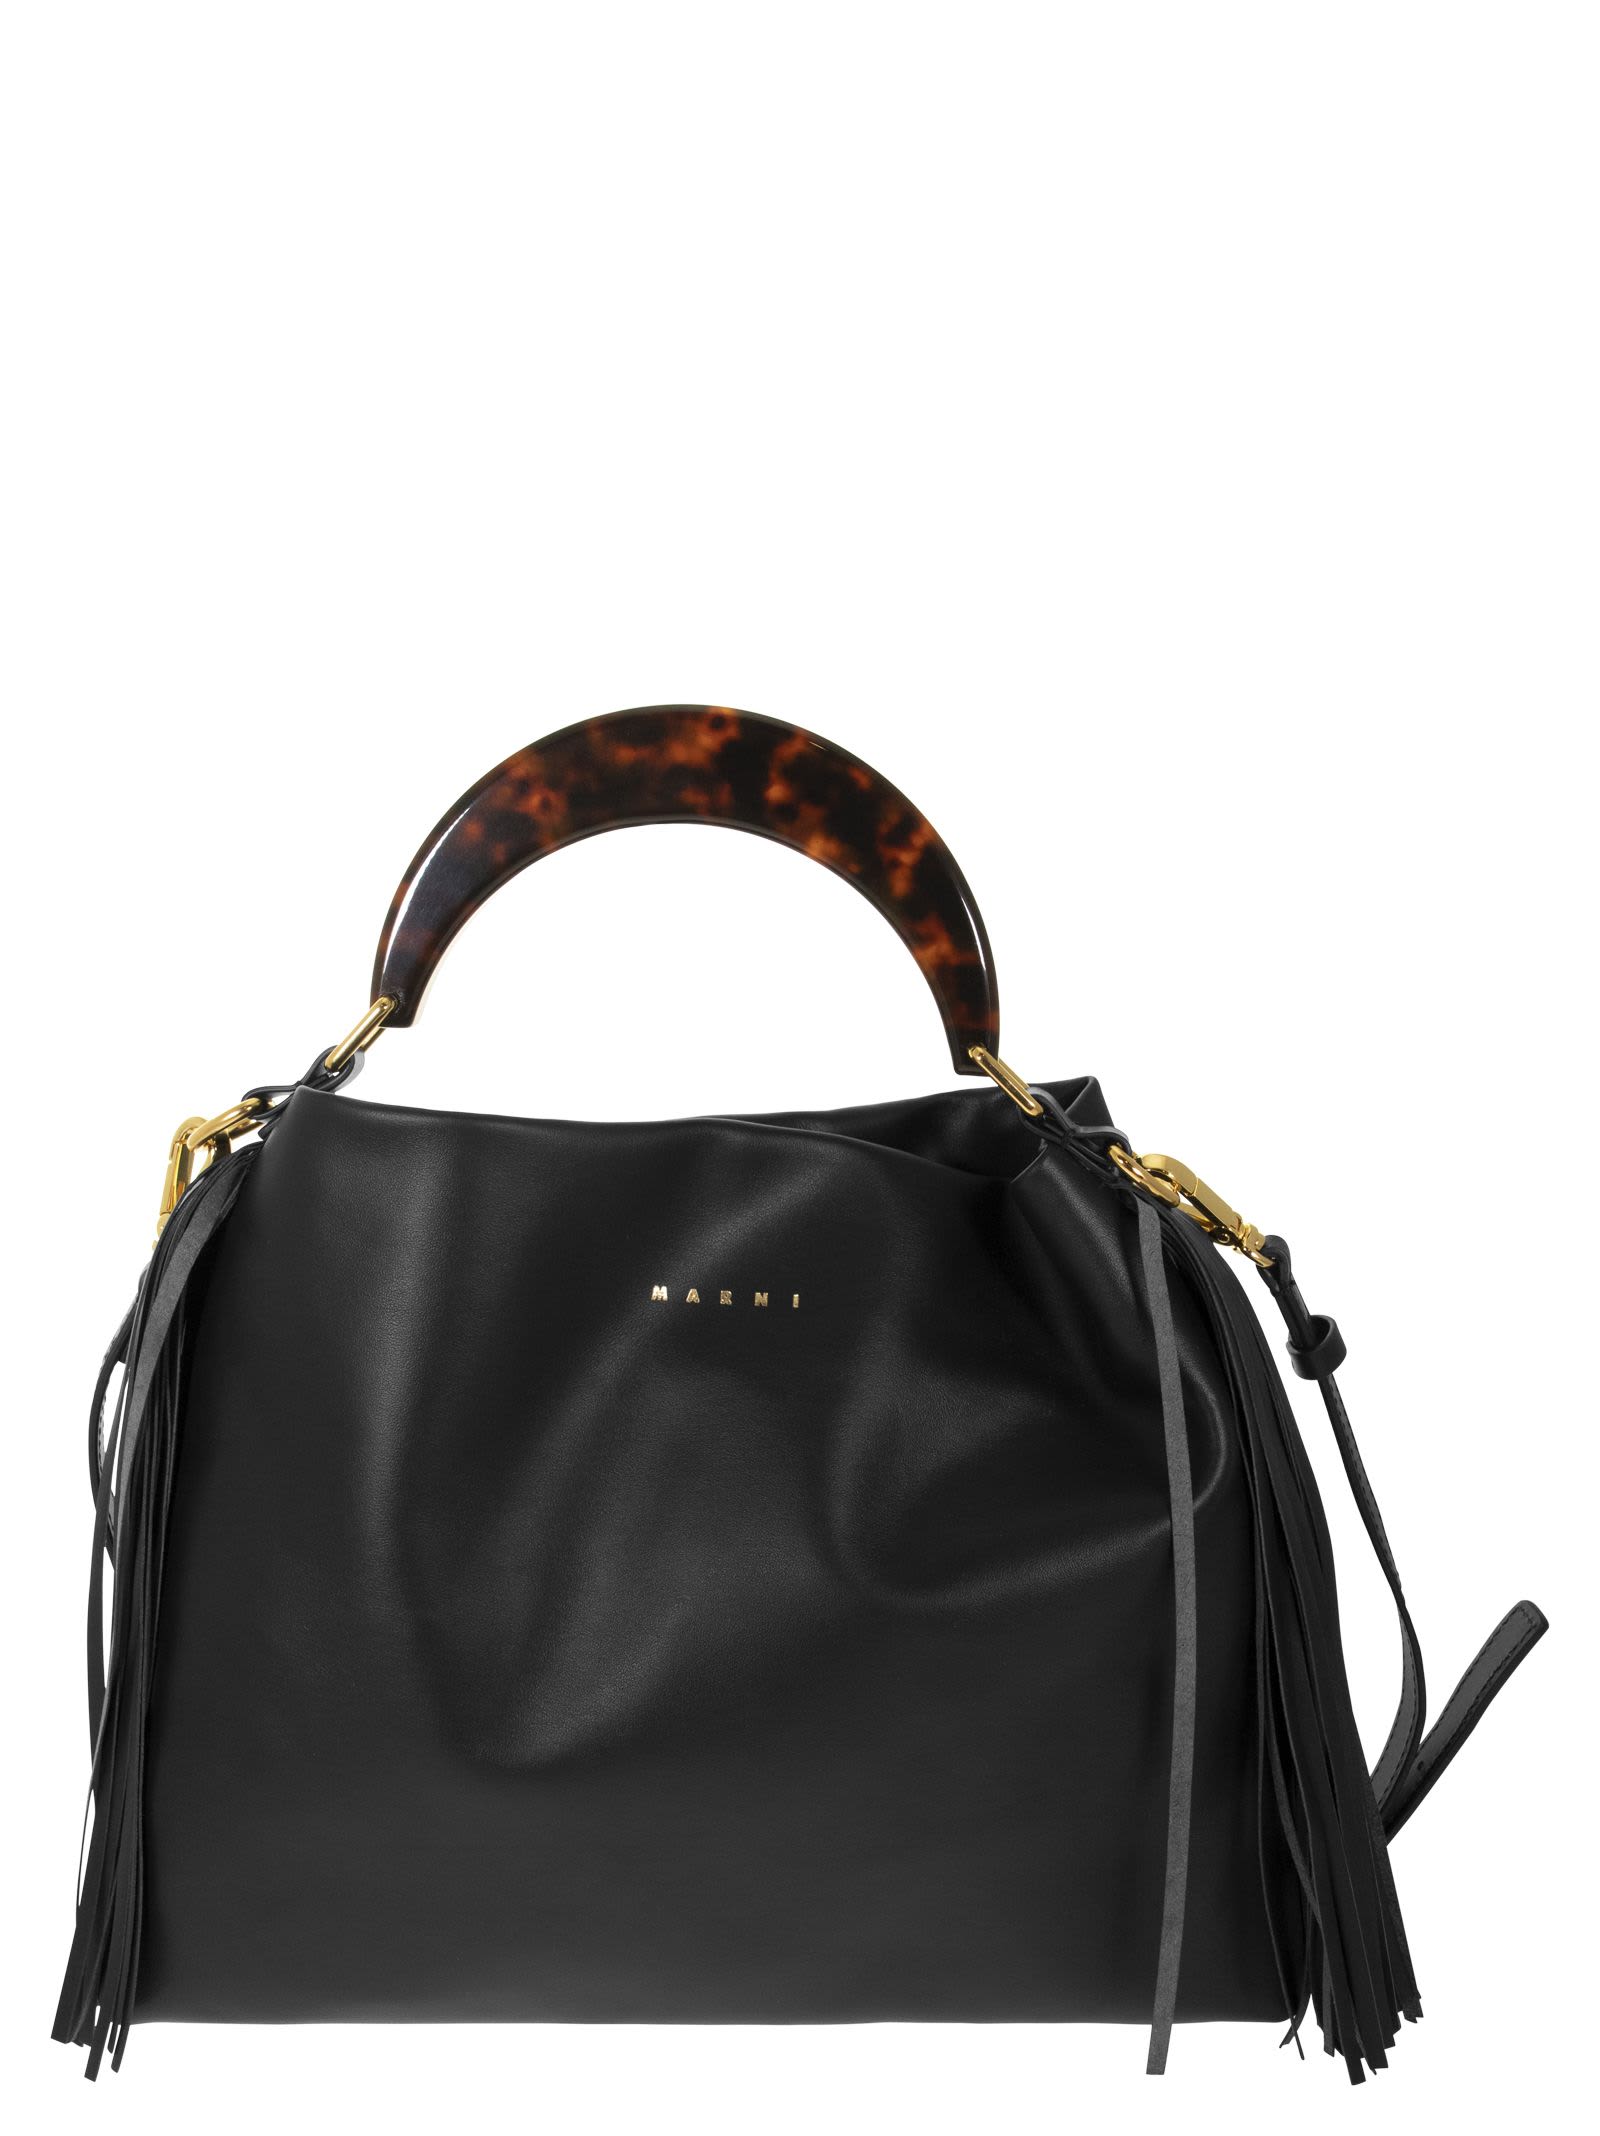 Marni Leather Handbag With Resin Handle